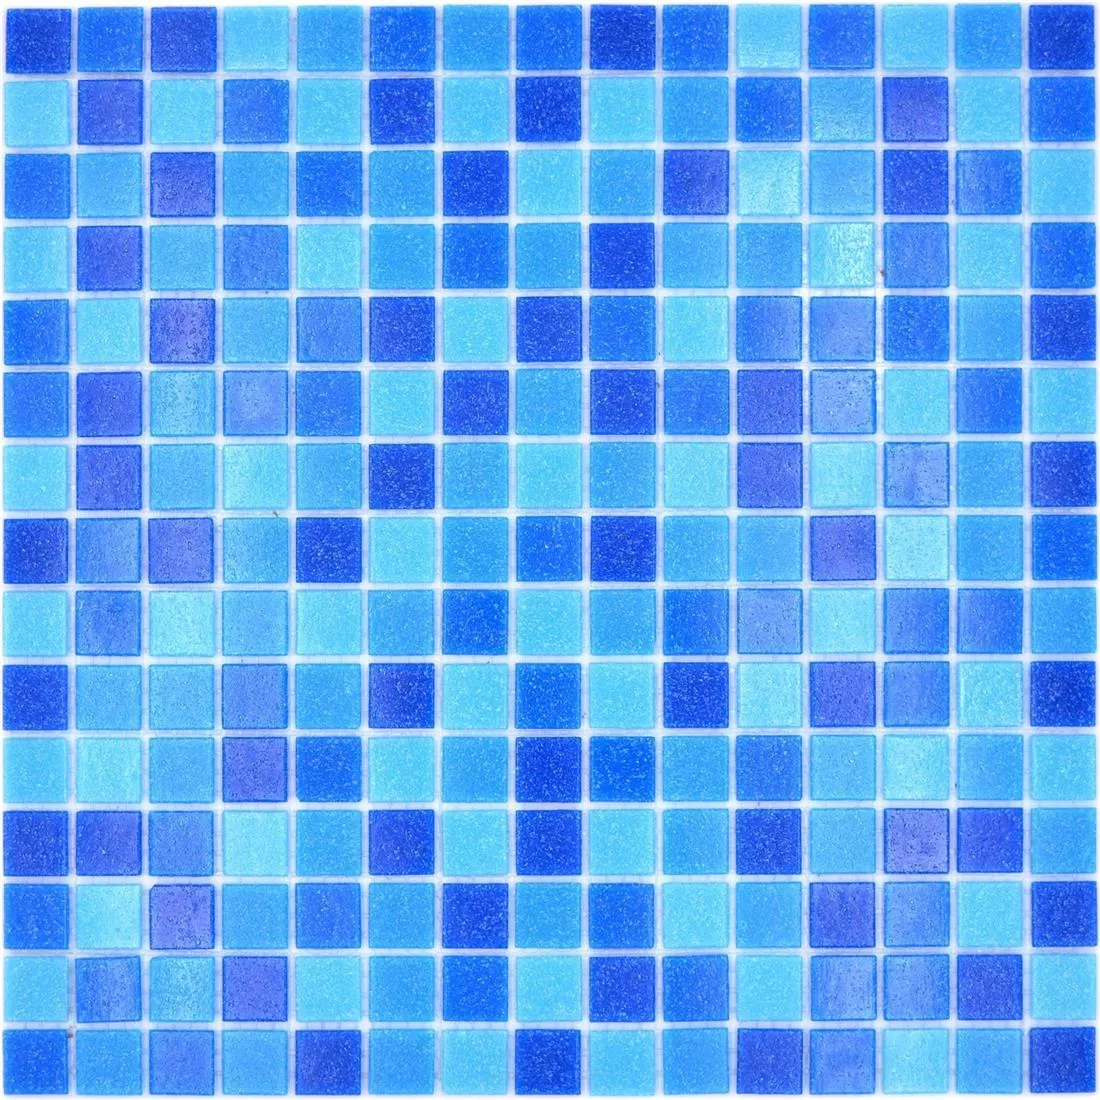 Campione Piscina Mosaico North Sea Blu Blu Chiaro Mix